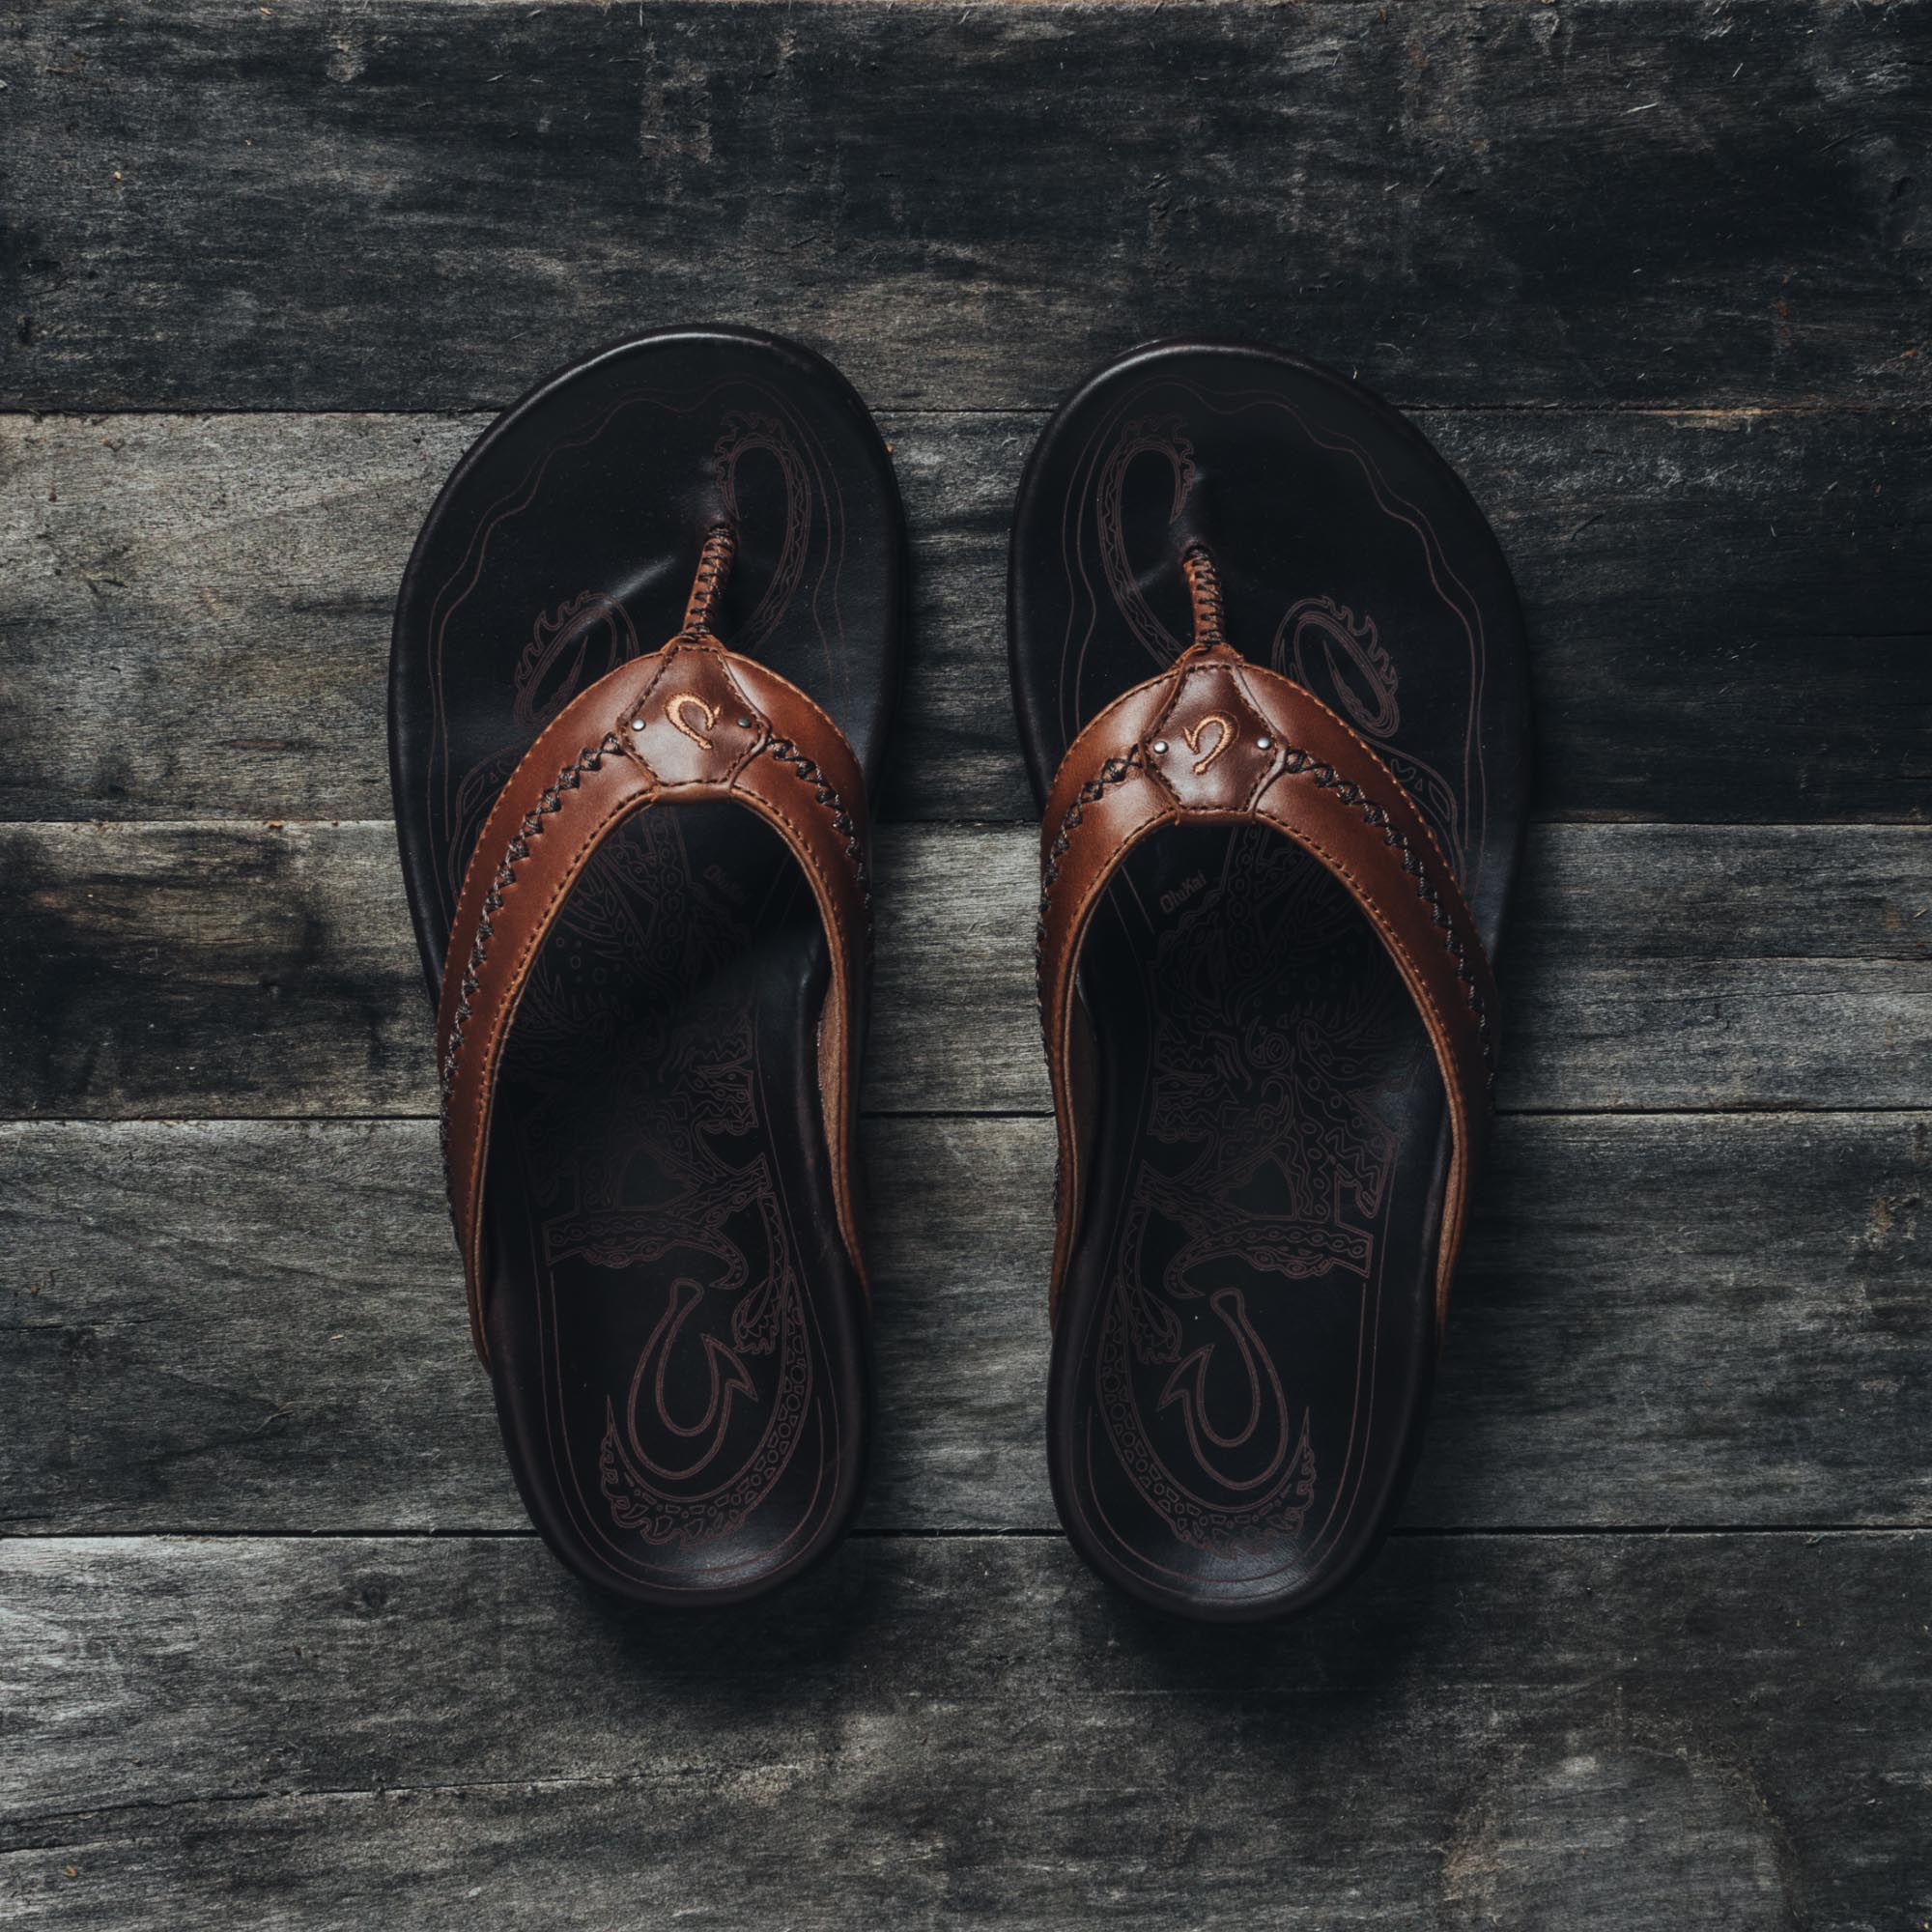 Mea Ola Men's Leather Beach Sandals - Dark Java | OluKai